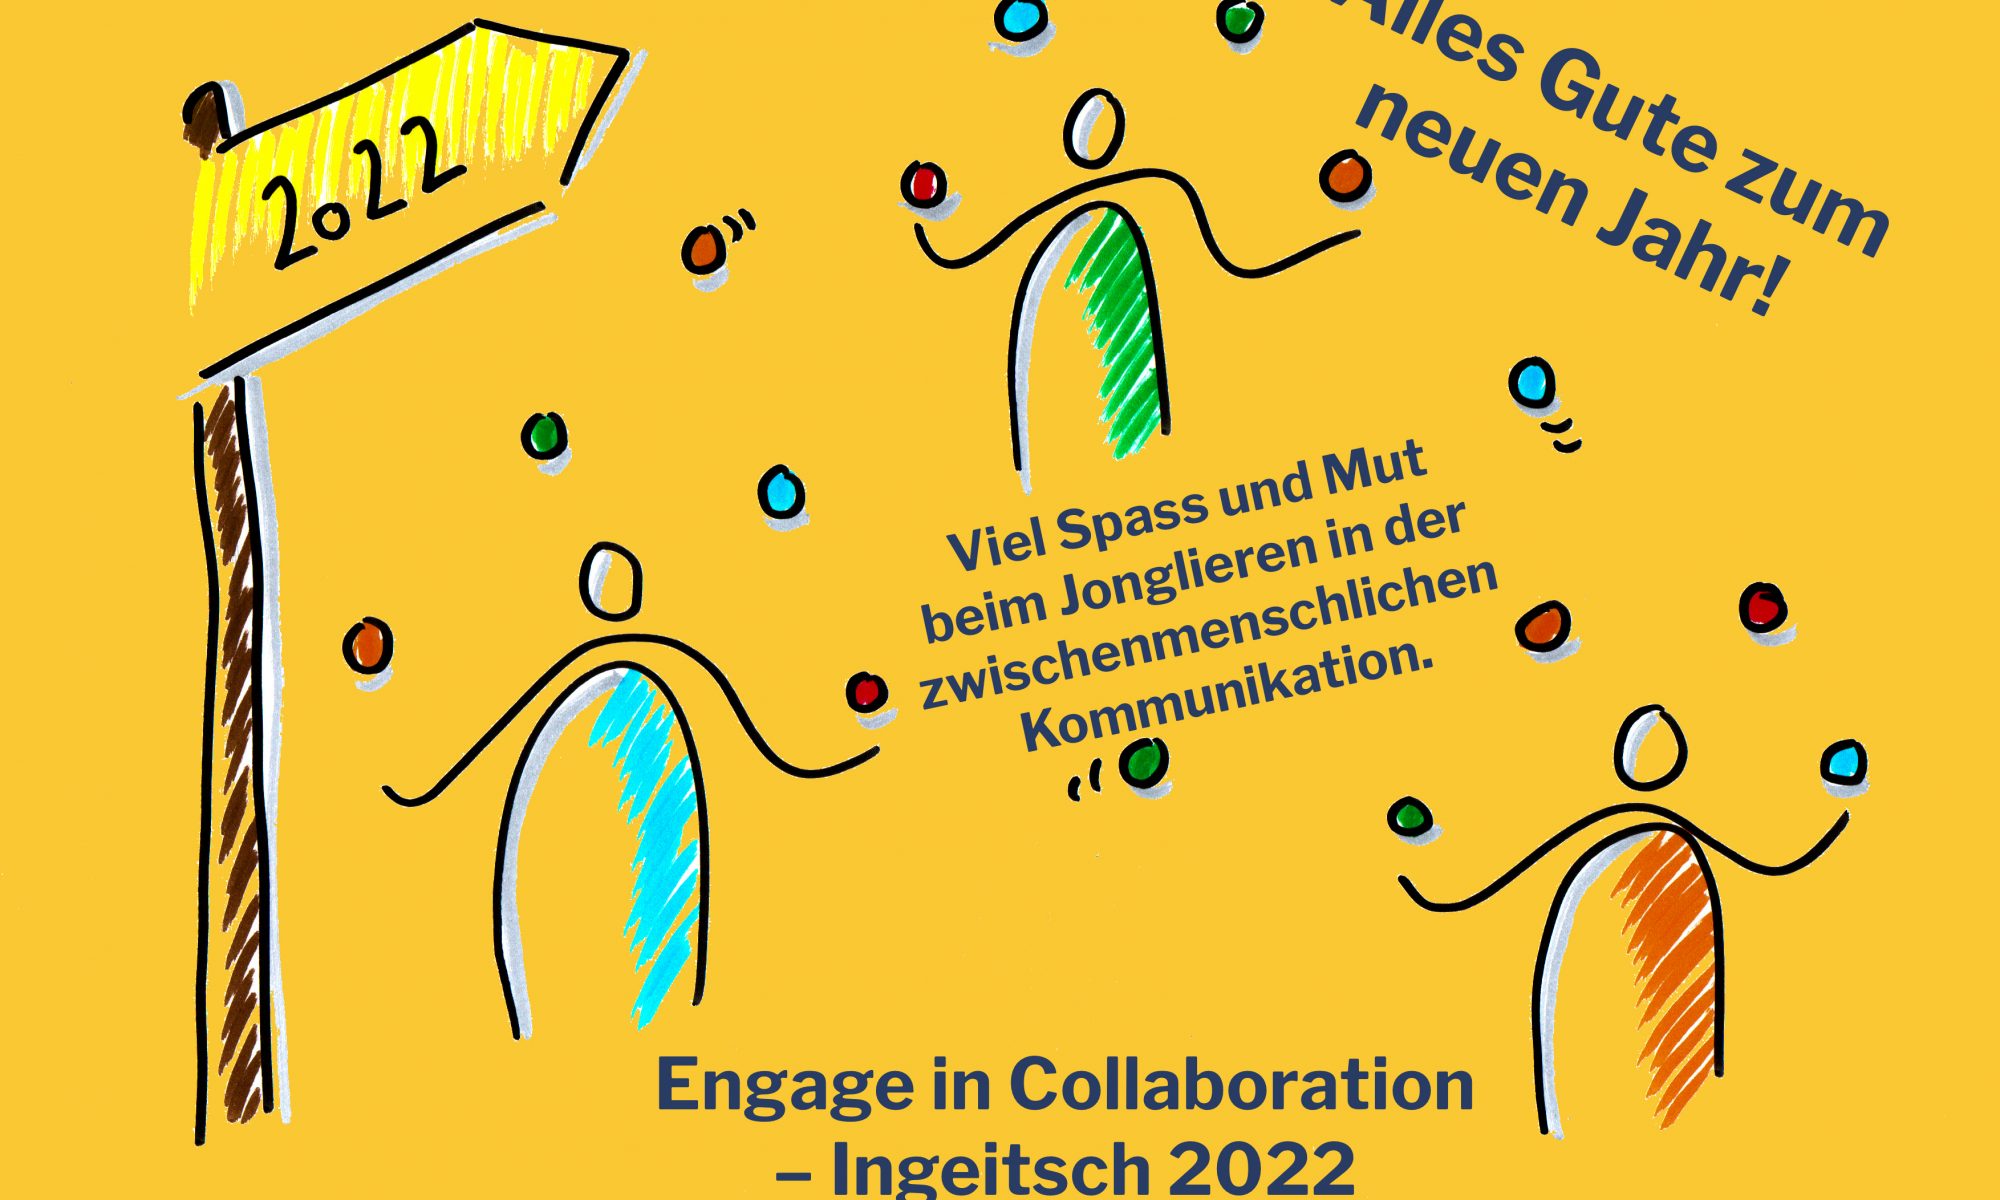 Neujahrswünsche: Engage in Collaboration